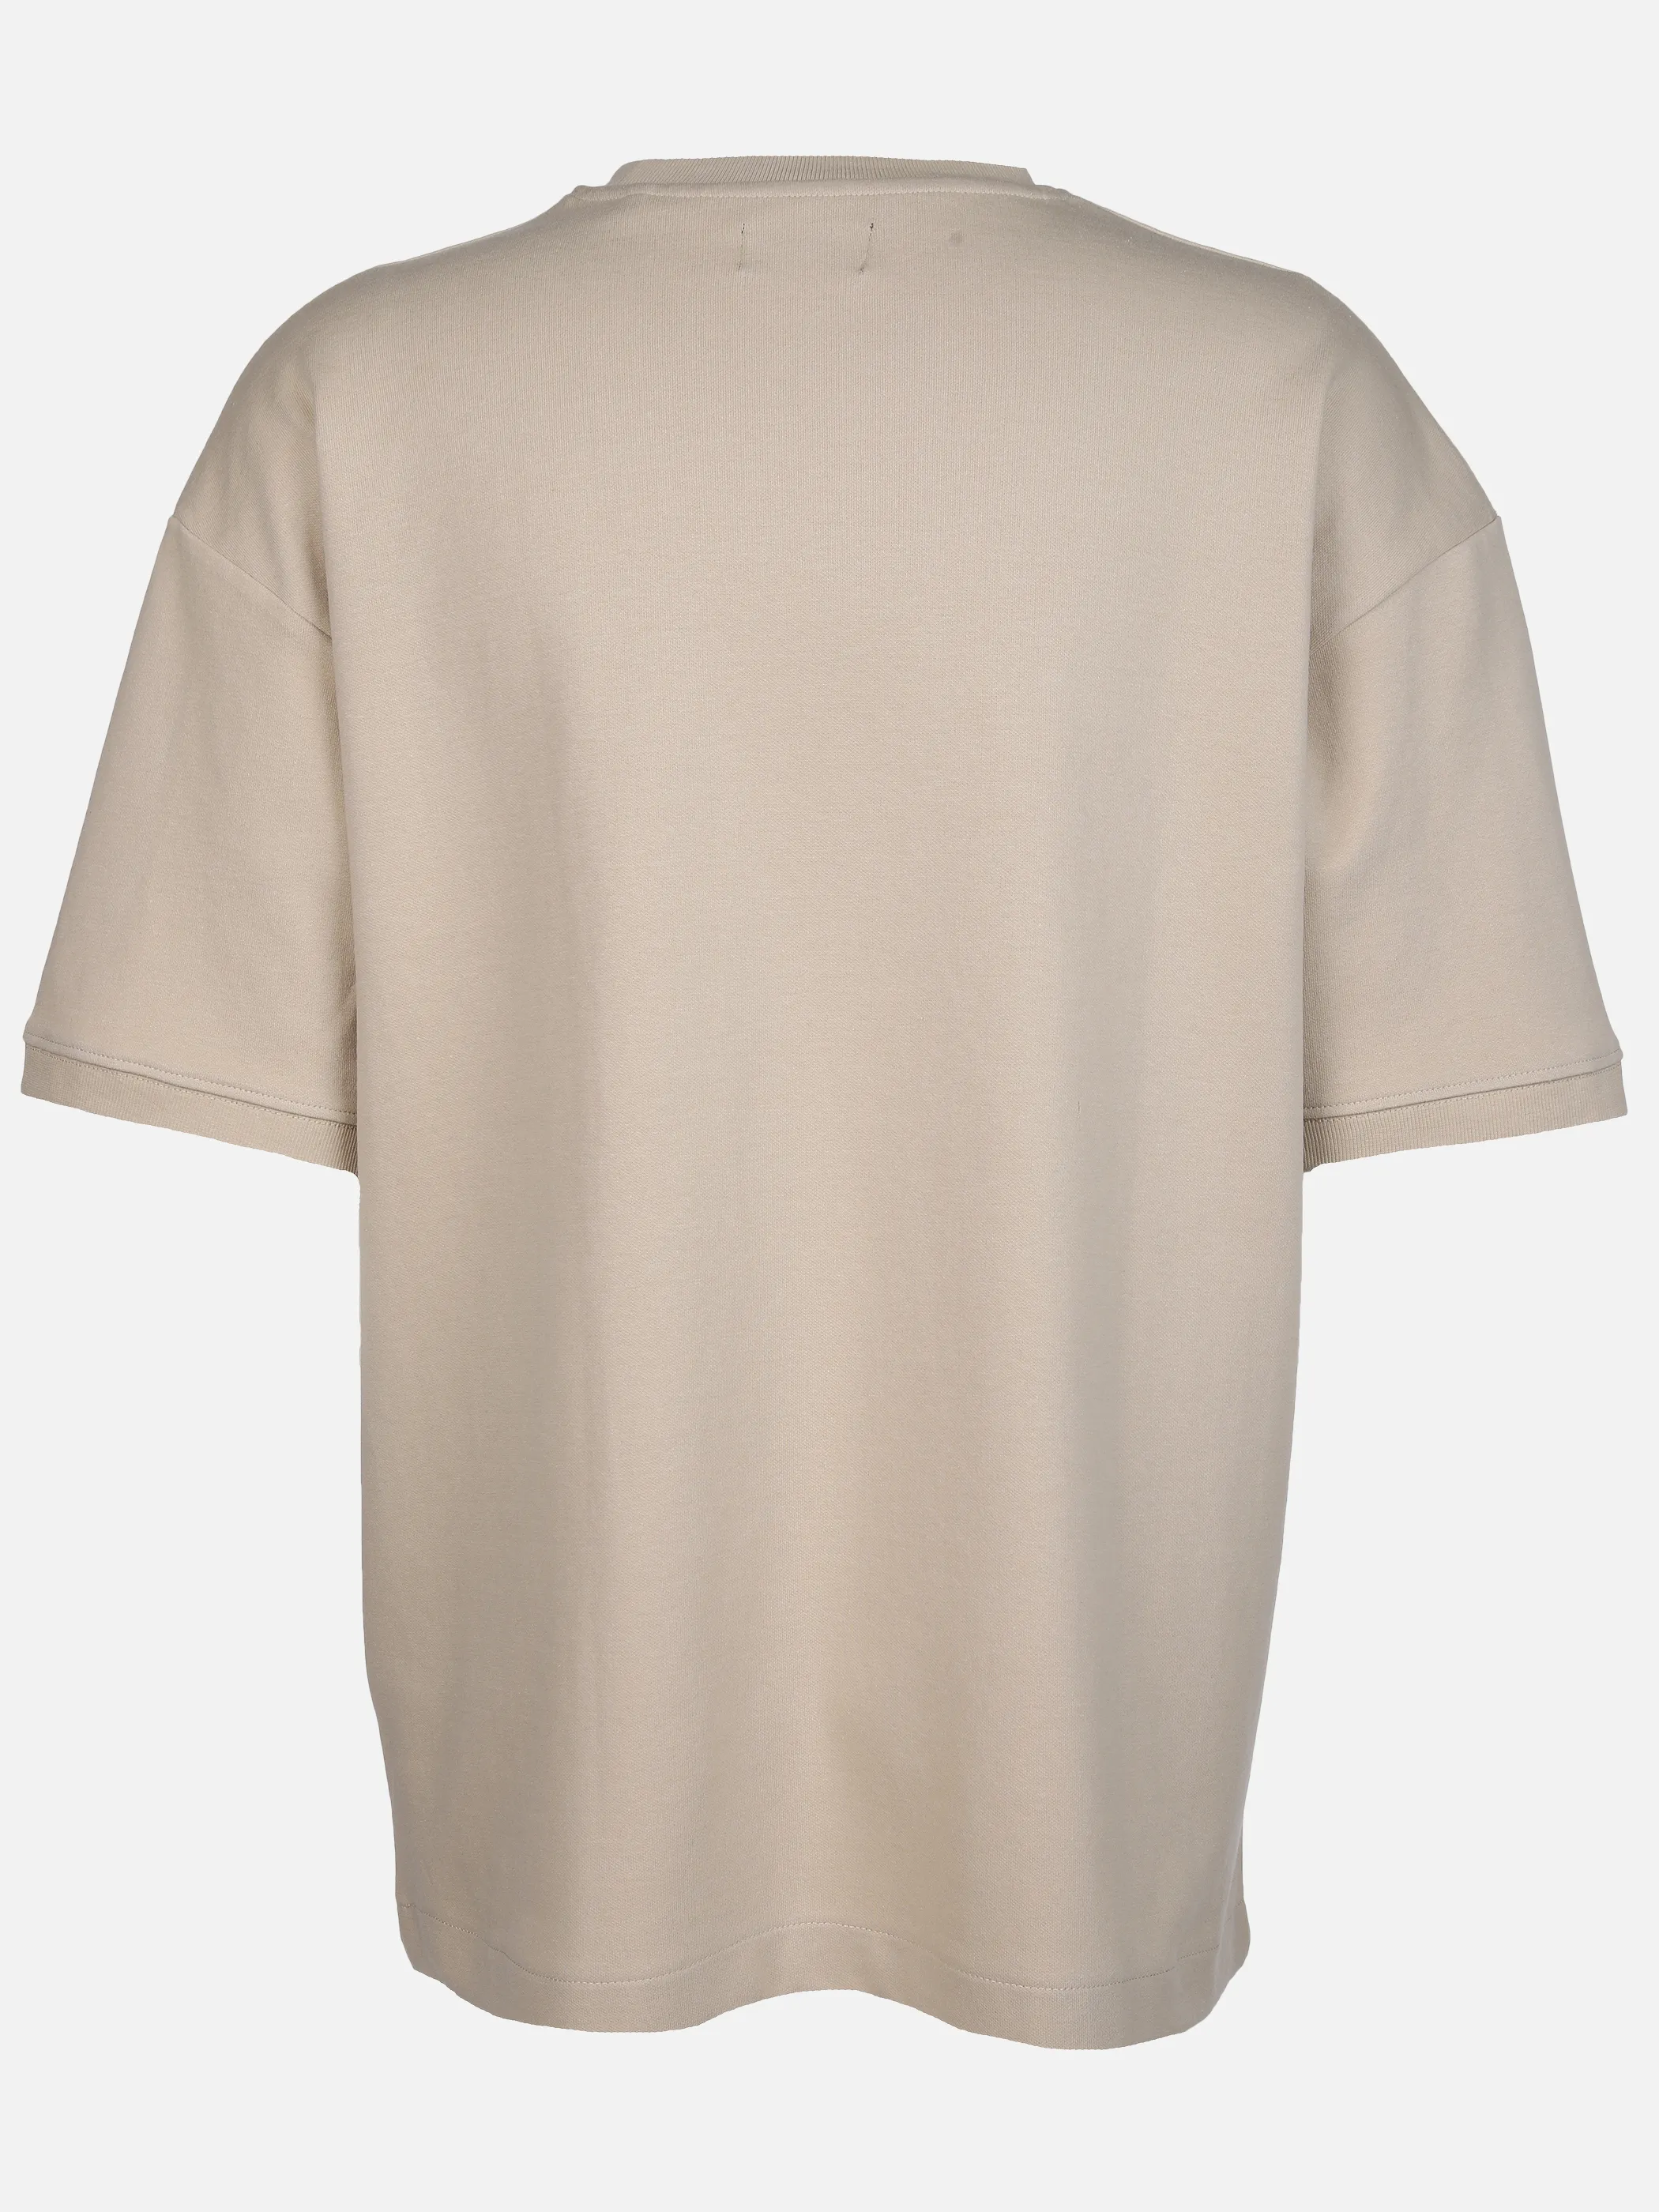 IX-O YF-He- T-Shirt Oversized Beige 891812 BEIGE 2